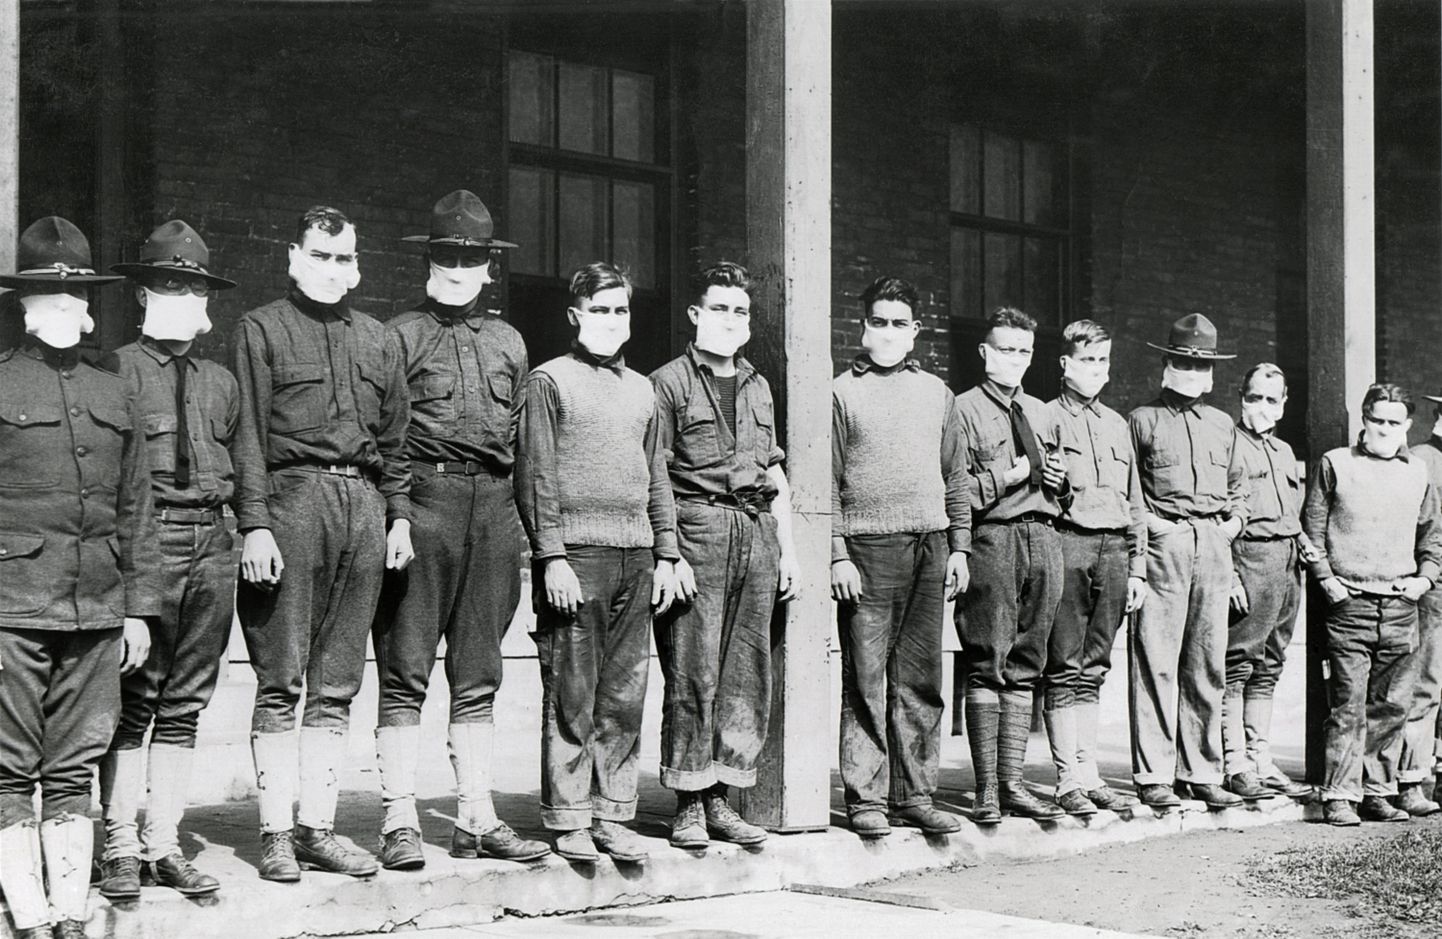 USA sõjaväehaigla meditsiinitöötajad kandsid gripi vältimiseks maske. 4. sõjahaigla Fort Porteris New Yorgis 1918-1919 hispaania gripi pandeemia ajal. 1918. aasta 19. november.